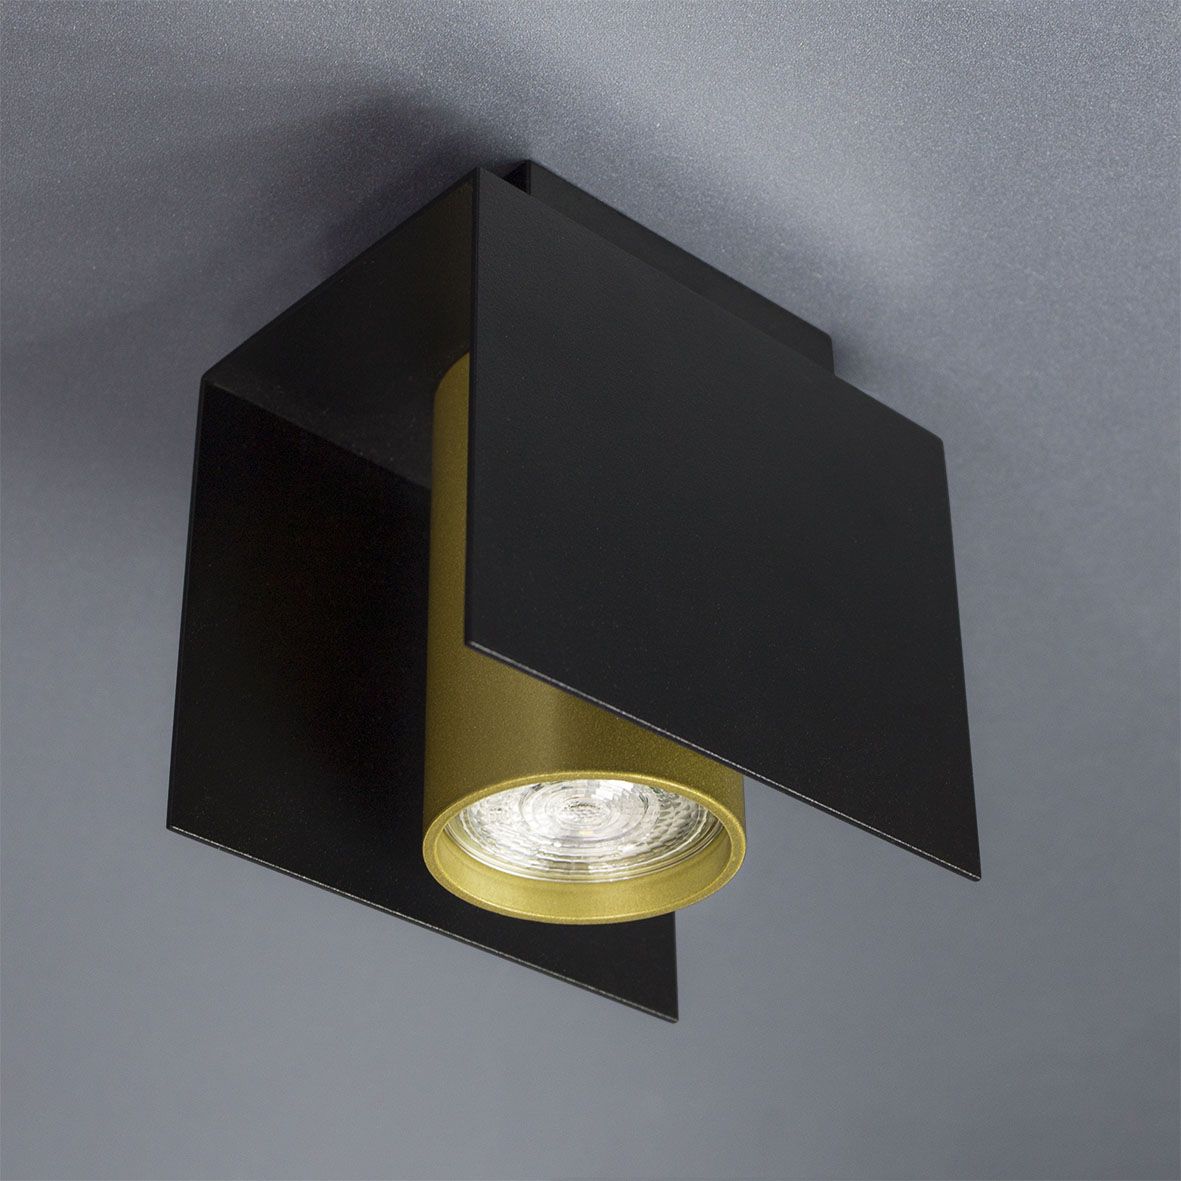 Ceiling lamp Bonn Imperium Light 316112.05.12 black / gold